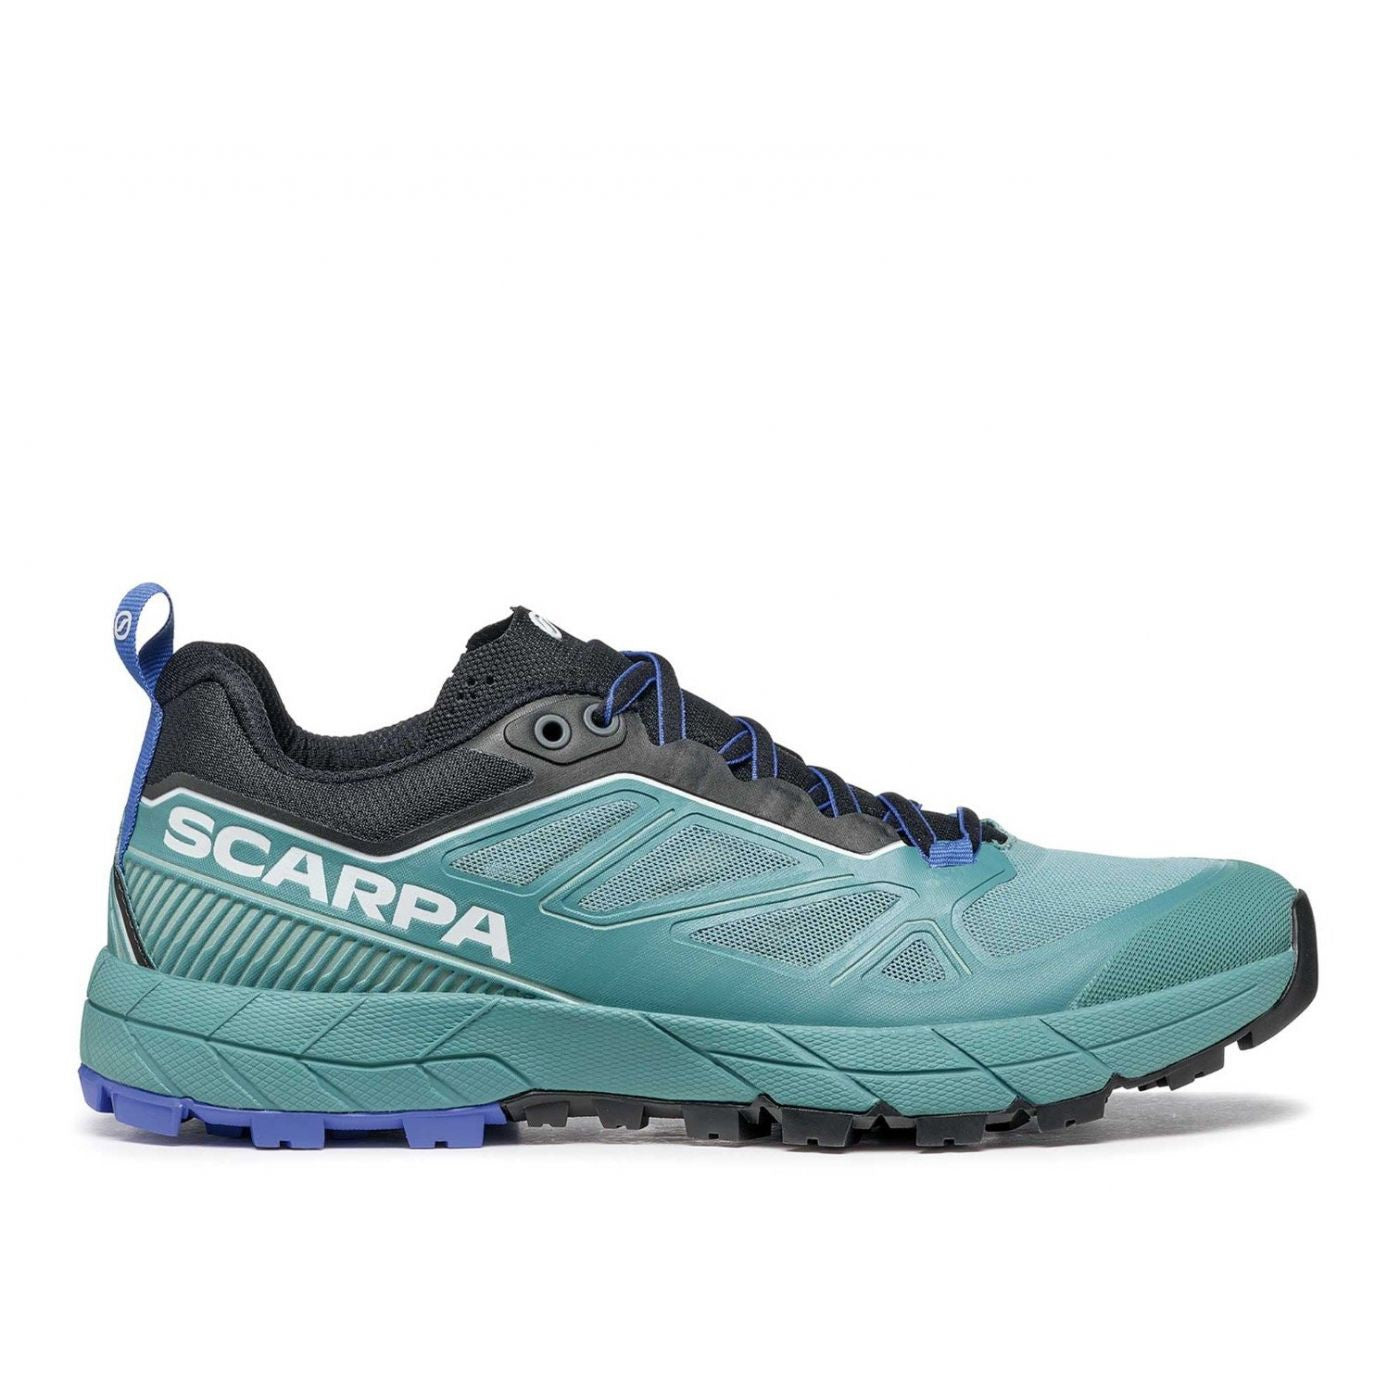 Scarpa Women's Rapid Approach Shoes